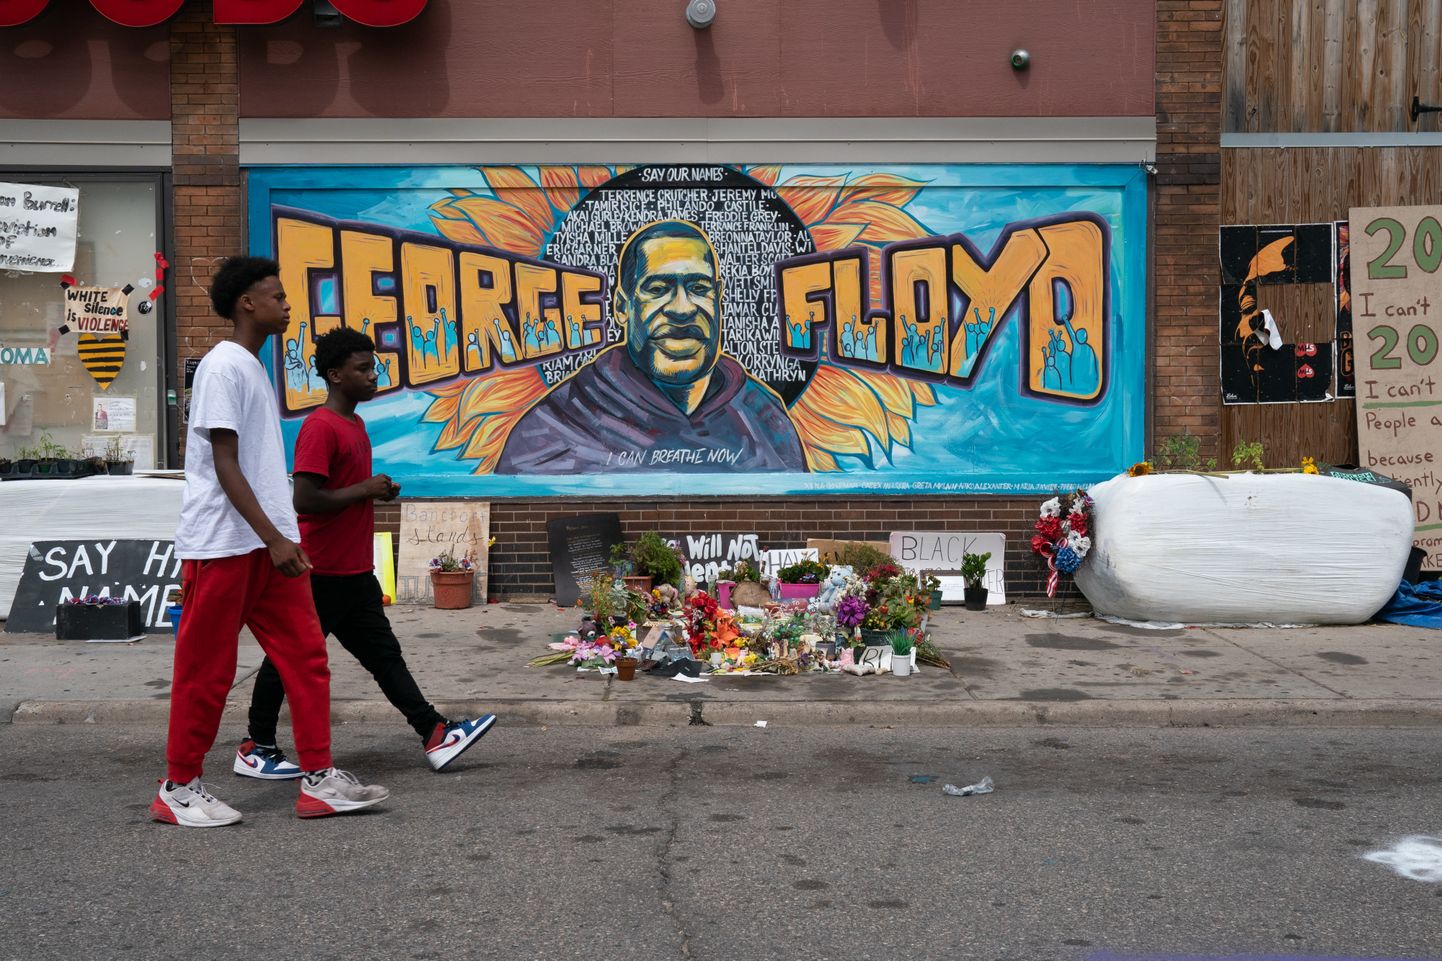 George Floydi surm vahistamise käigus vallandas ulatuslikud rassismivastased protestid.